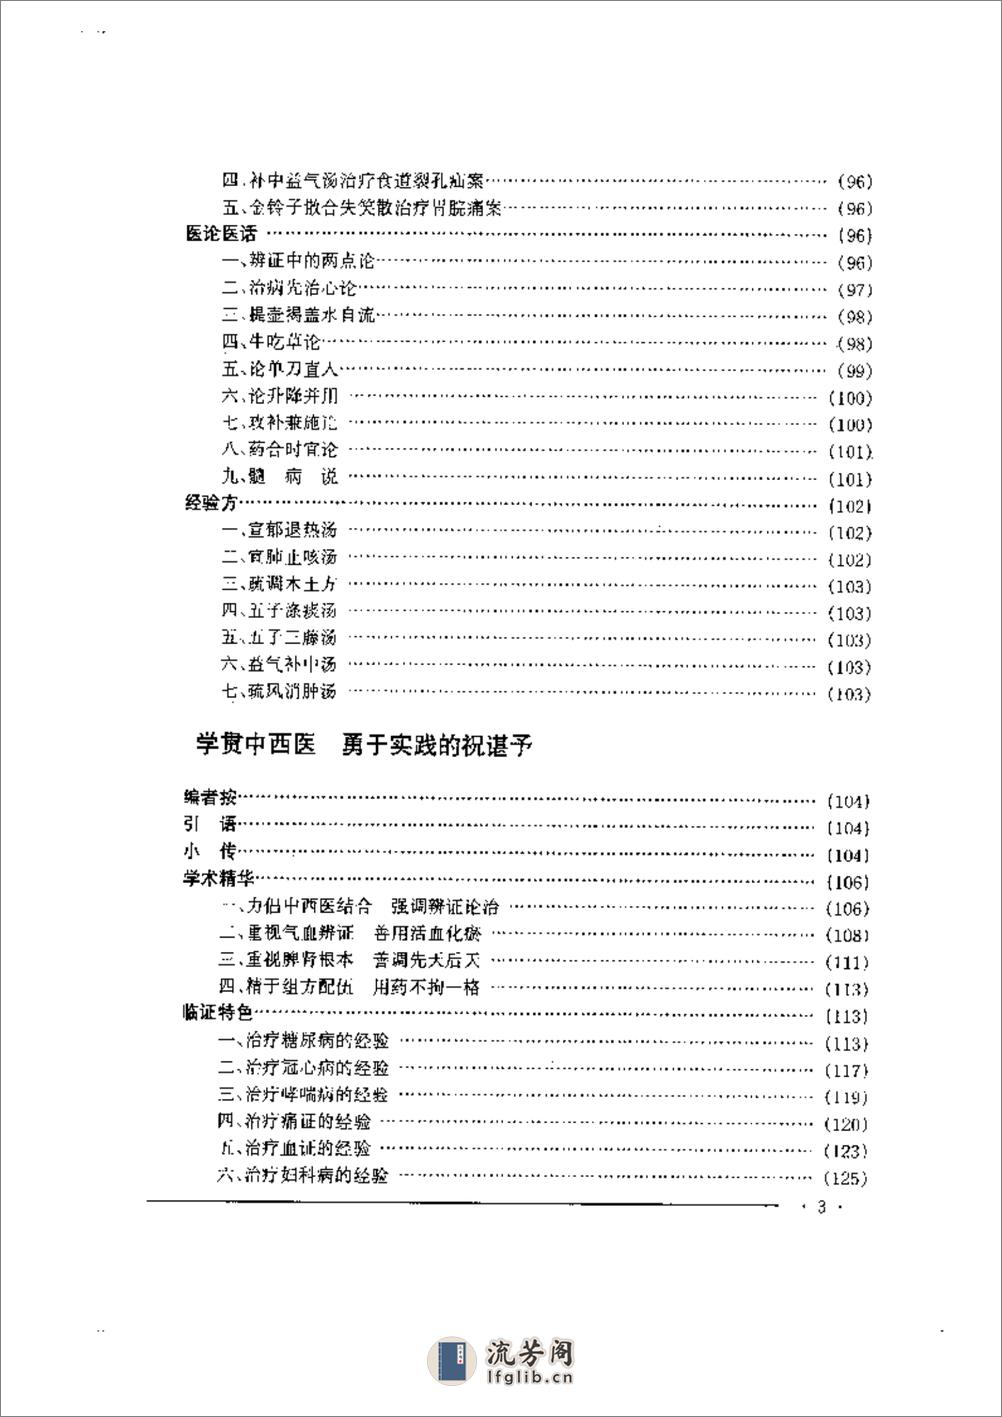 中国名老中医药专家学术经验集  2 - 第3页预览图